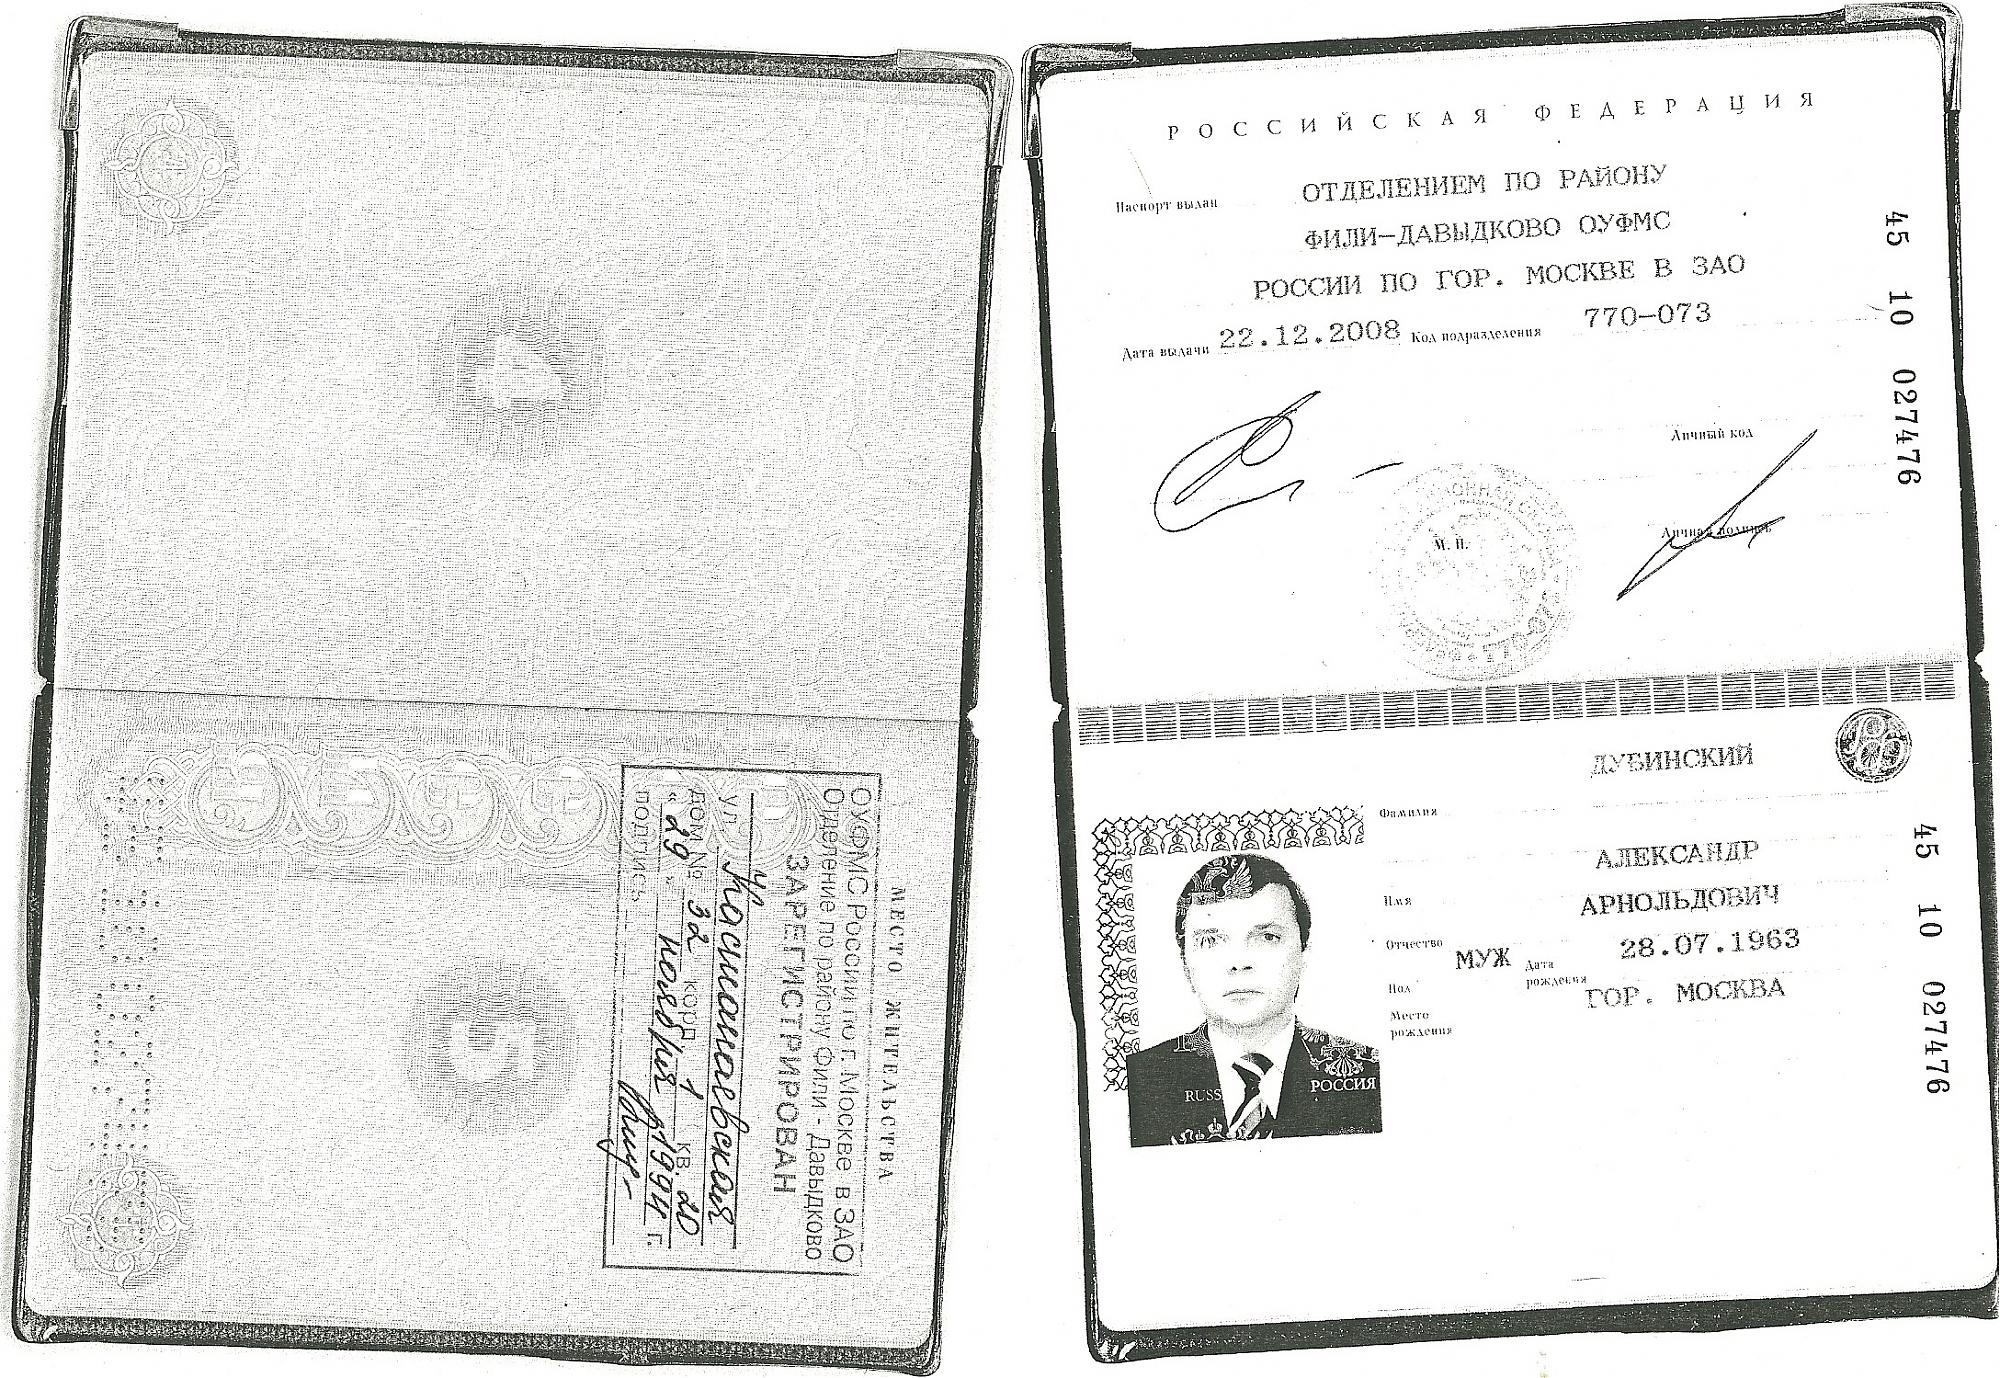 Скан паспорта РФ С пропиской